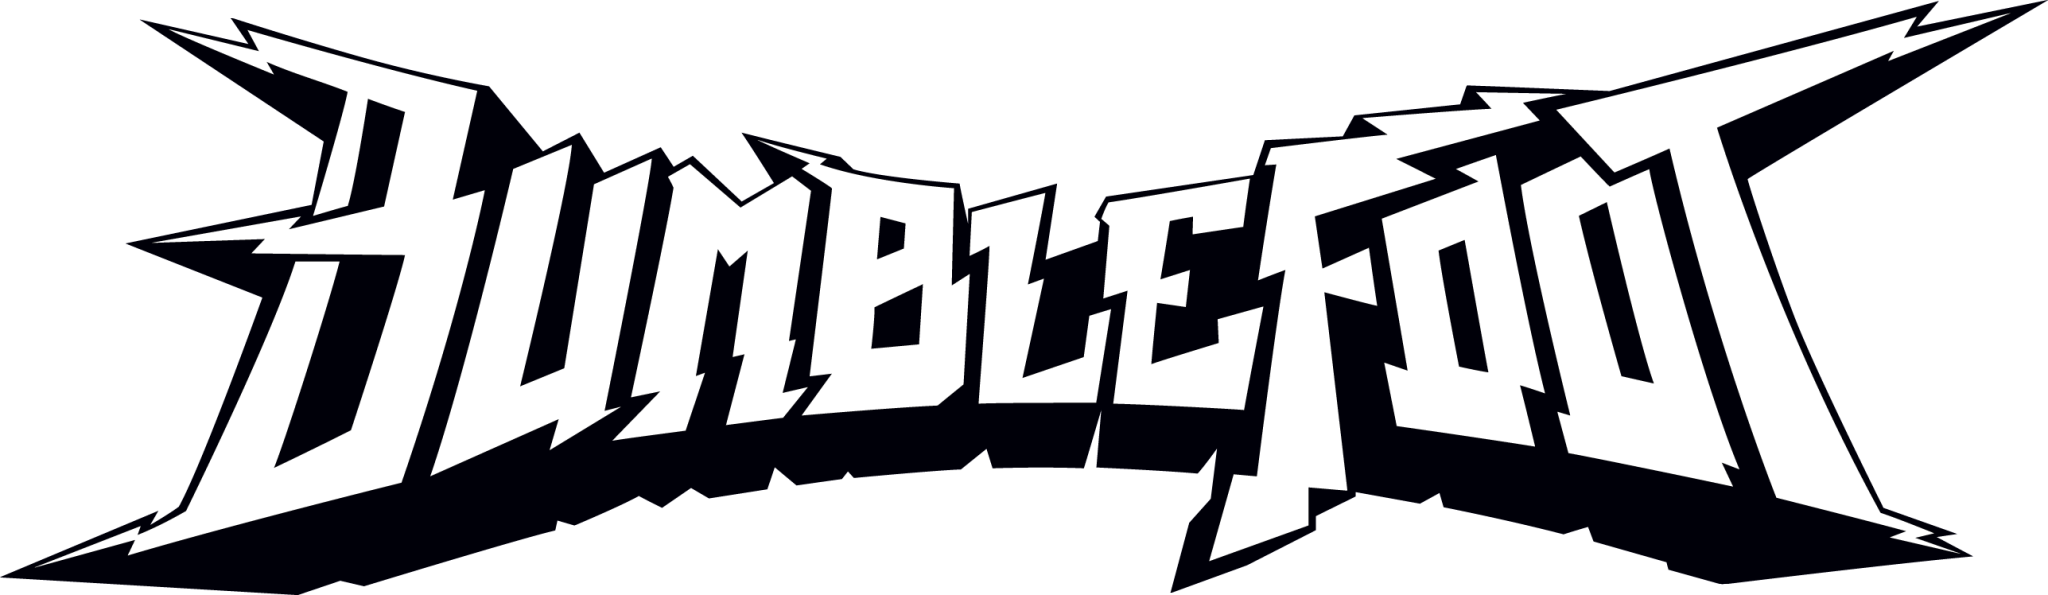 Bumblefoot Interview Part 2 - Bumblefoot Logo (2048x595)